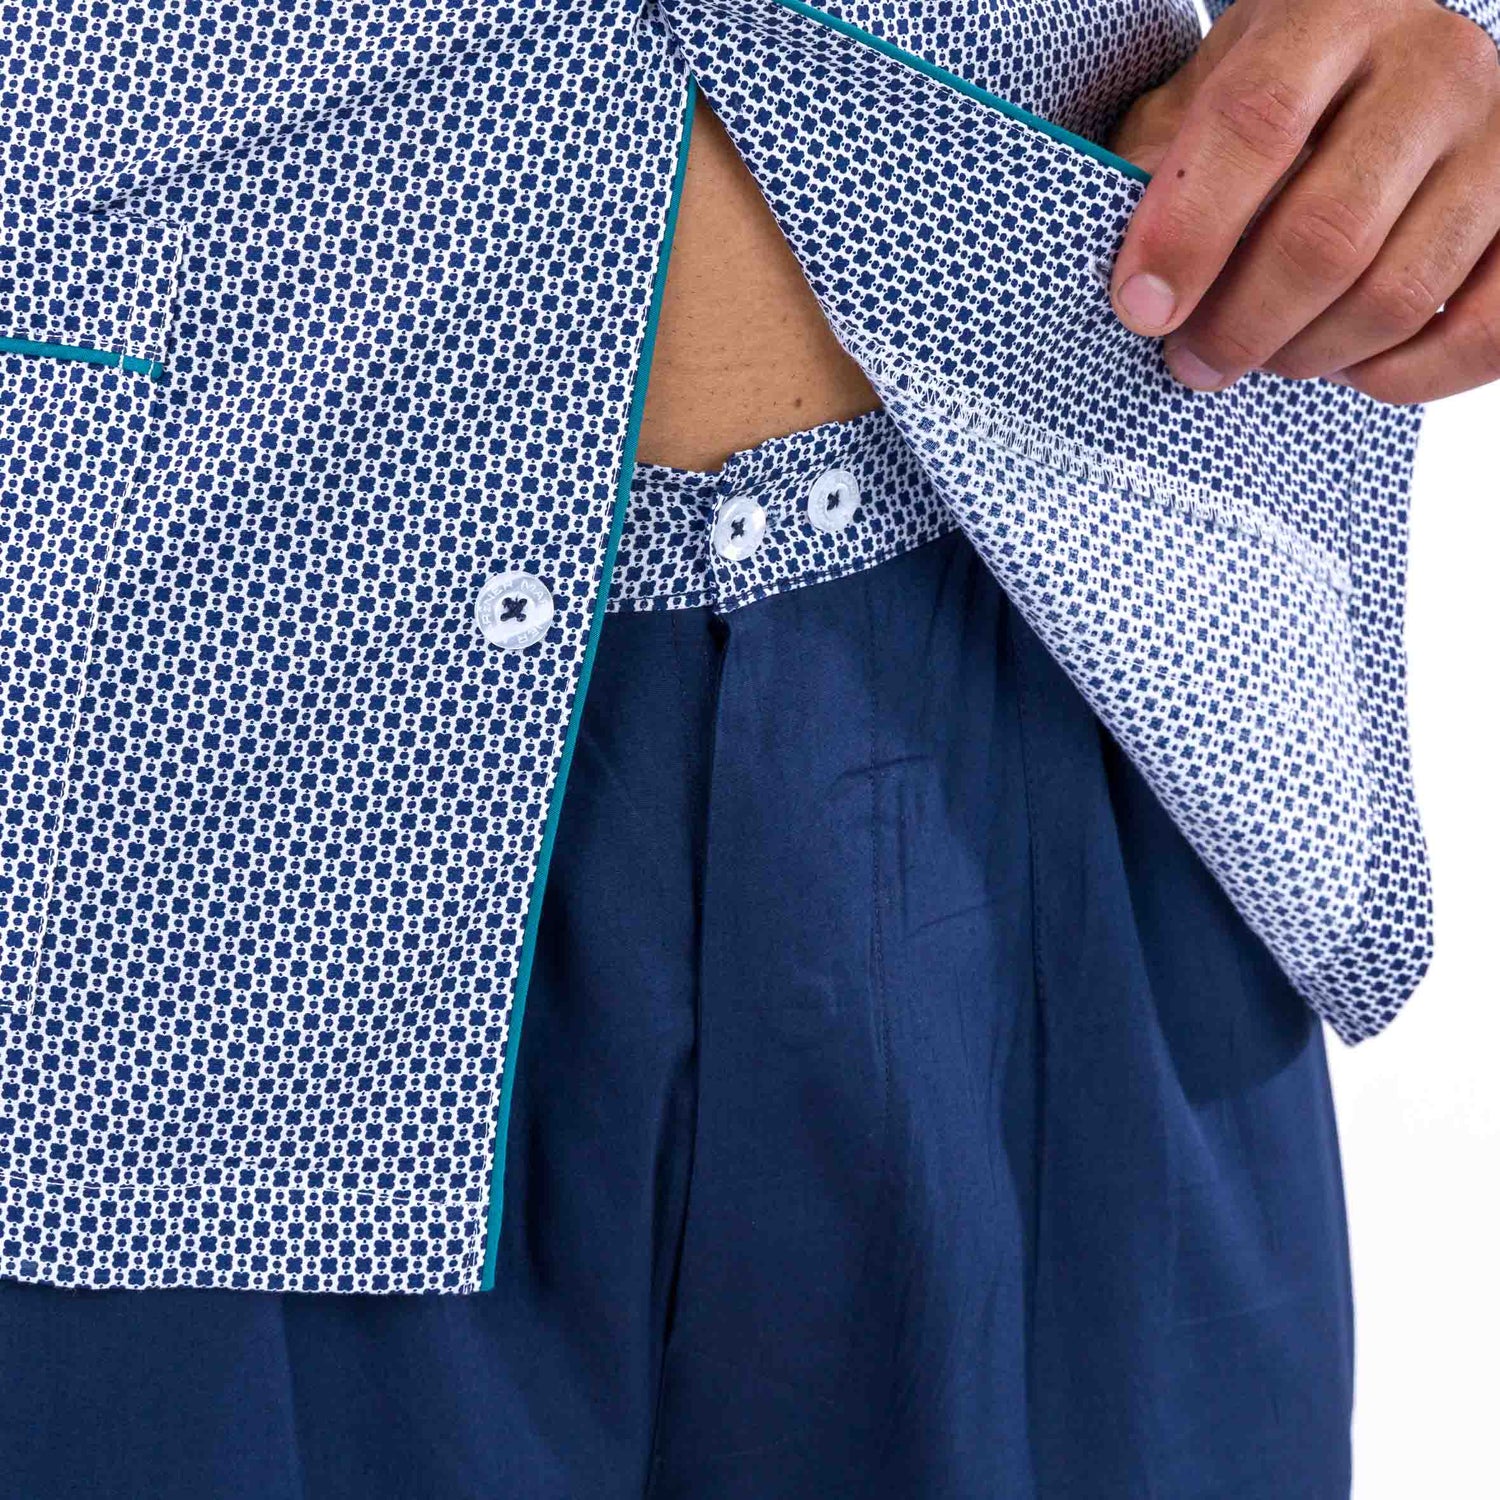 Pyjama Long Ouvert imprimé en popeline Pur Coton Peigné Bleu Marine Petits motifs